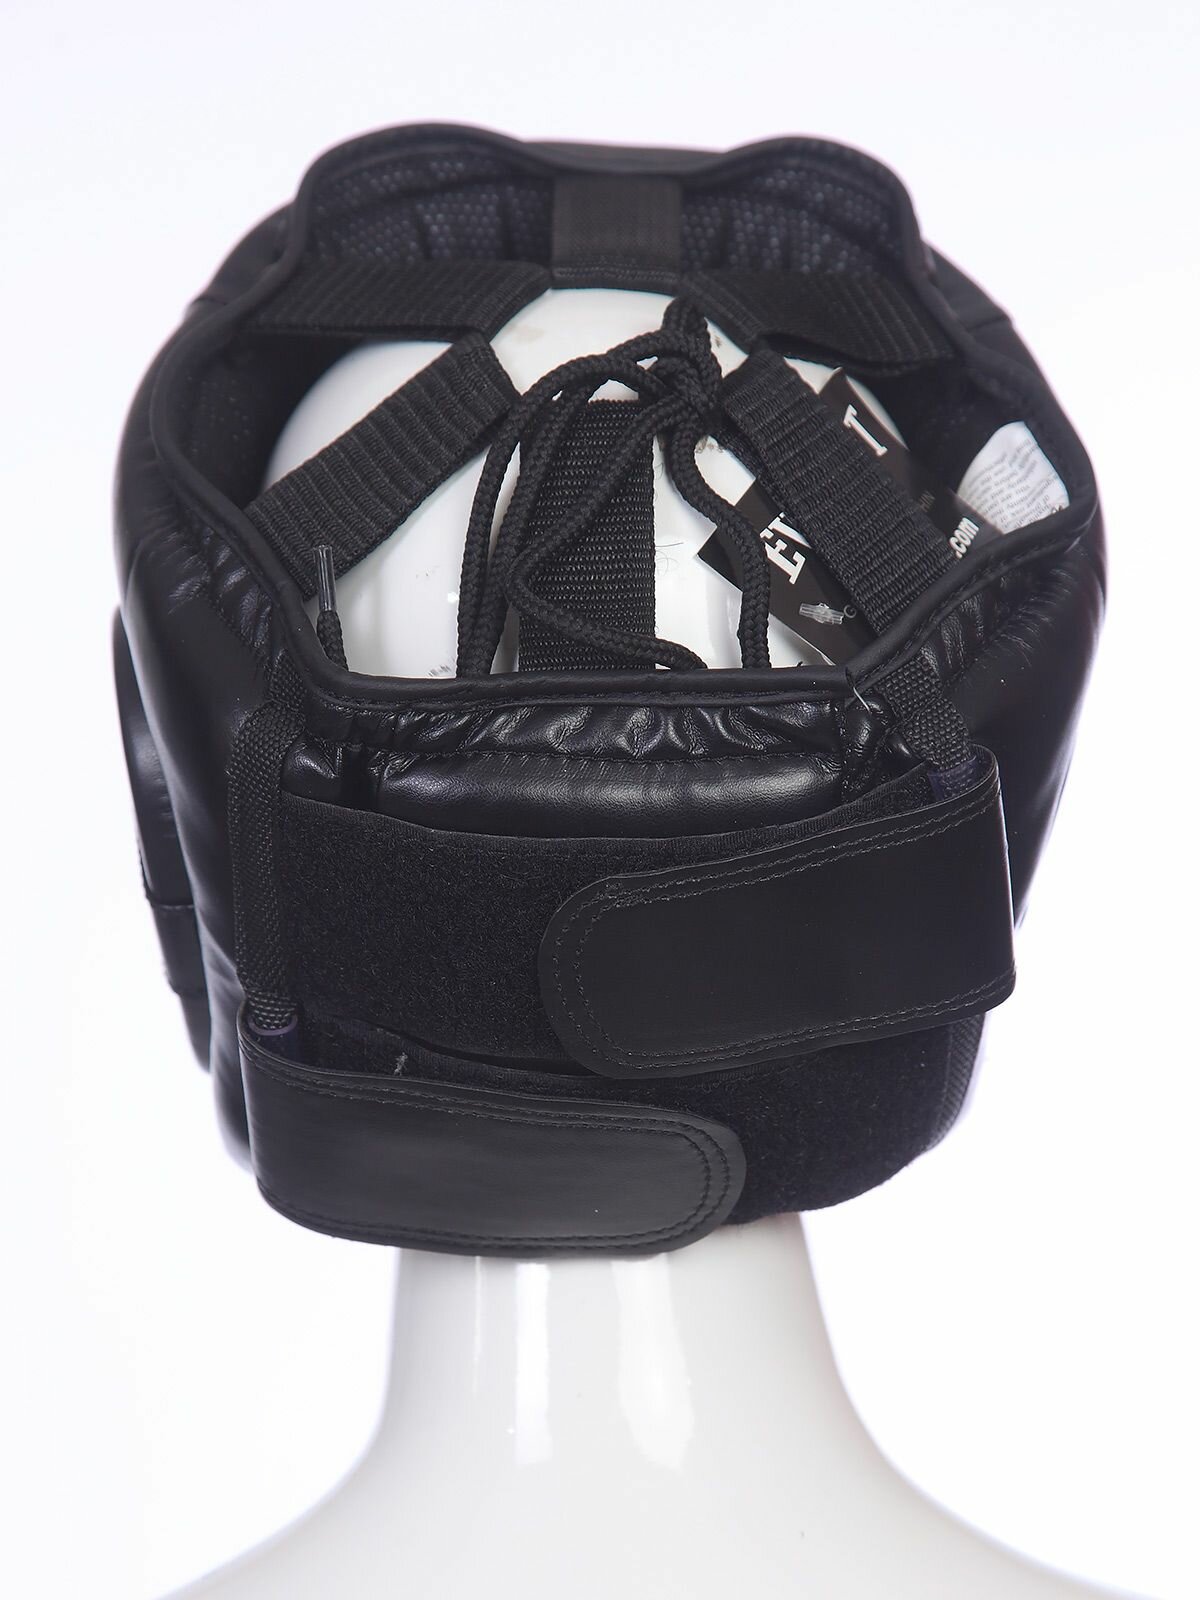 Боксерский шлем Everlast, шлем для бокса тренировочный, черный-L